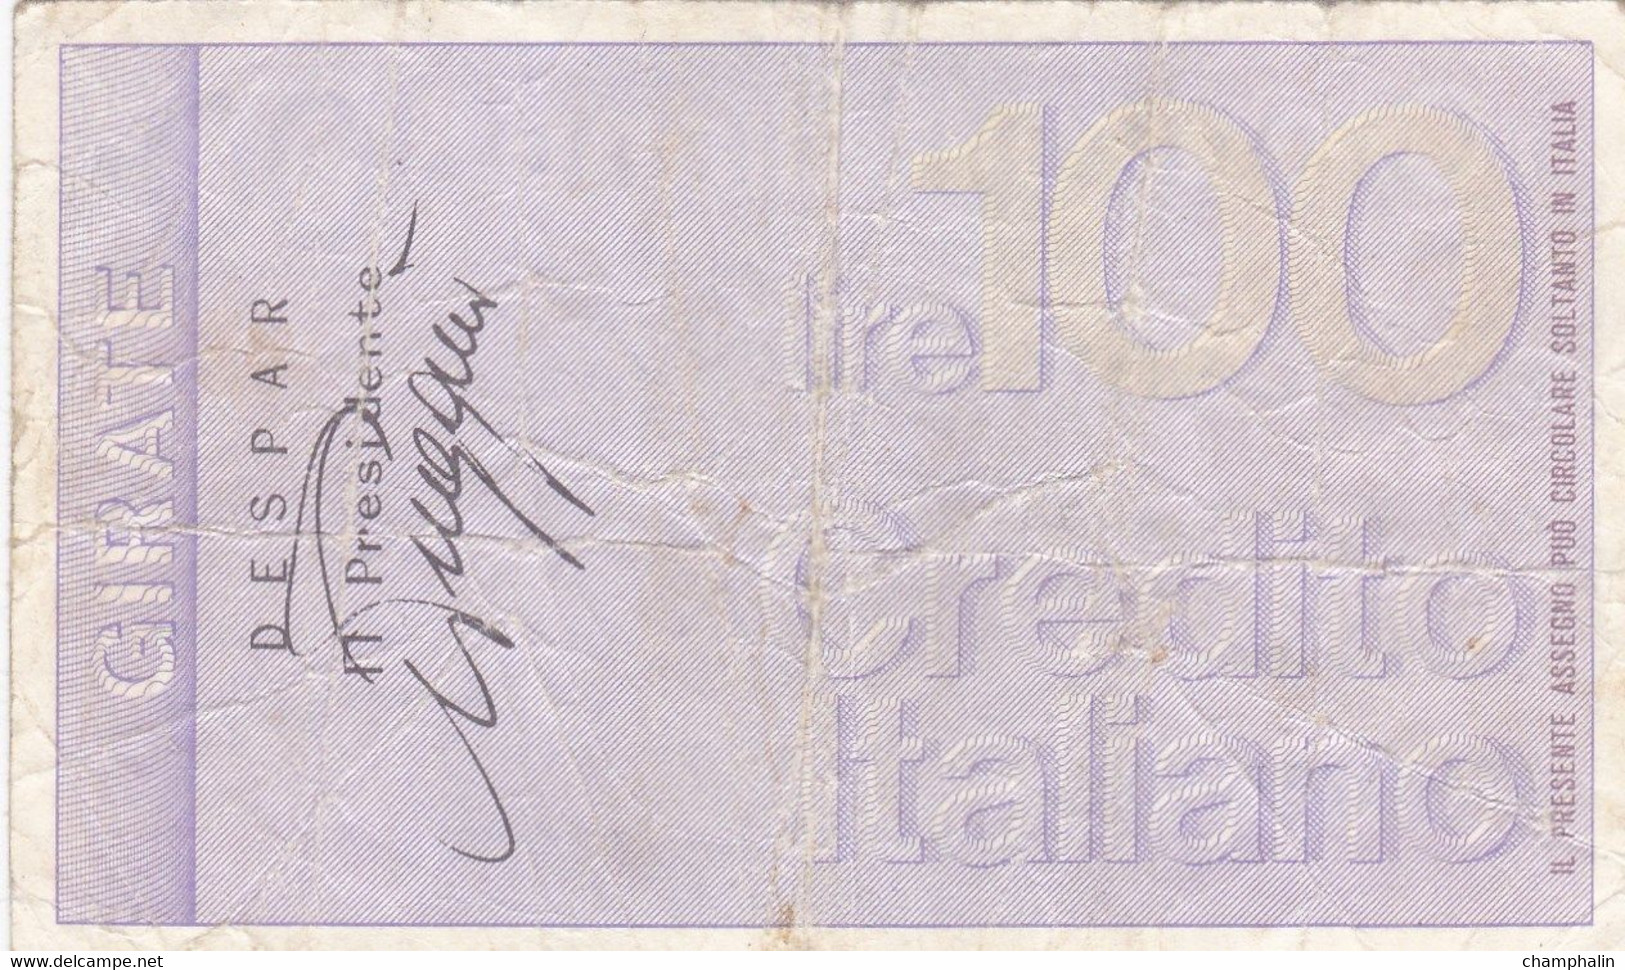 Italie - Billet De 100 Lire - Credito Italiano - 21 Septembre 1976 - Emissions Provisionnelles - Chèque - [ 4] Provisional Issues